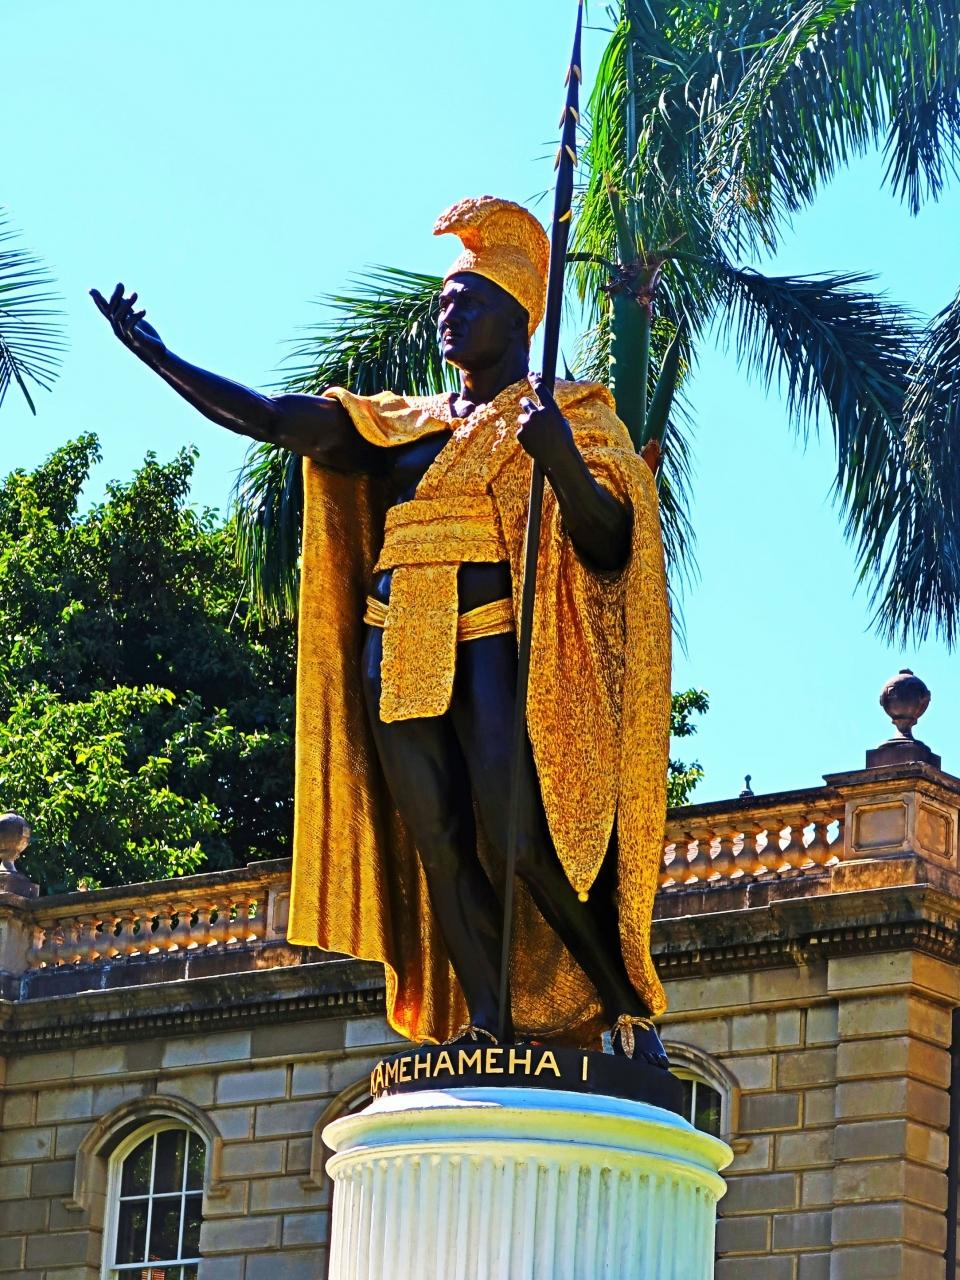 Oahu 3 カメハメハ1世 像 イオラニ宮殿の前で 記念写真の人気スポット ホノルル ハワイ の旅行記 ブログ By マキタンさん フォートラベル